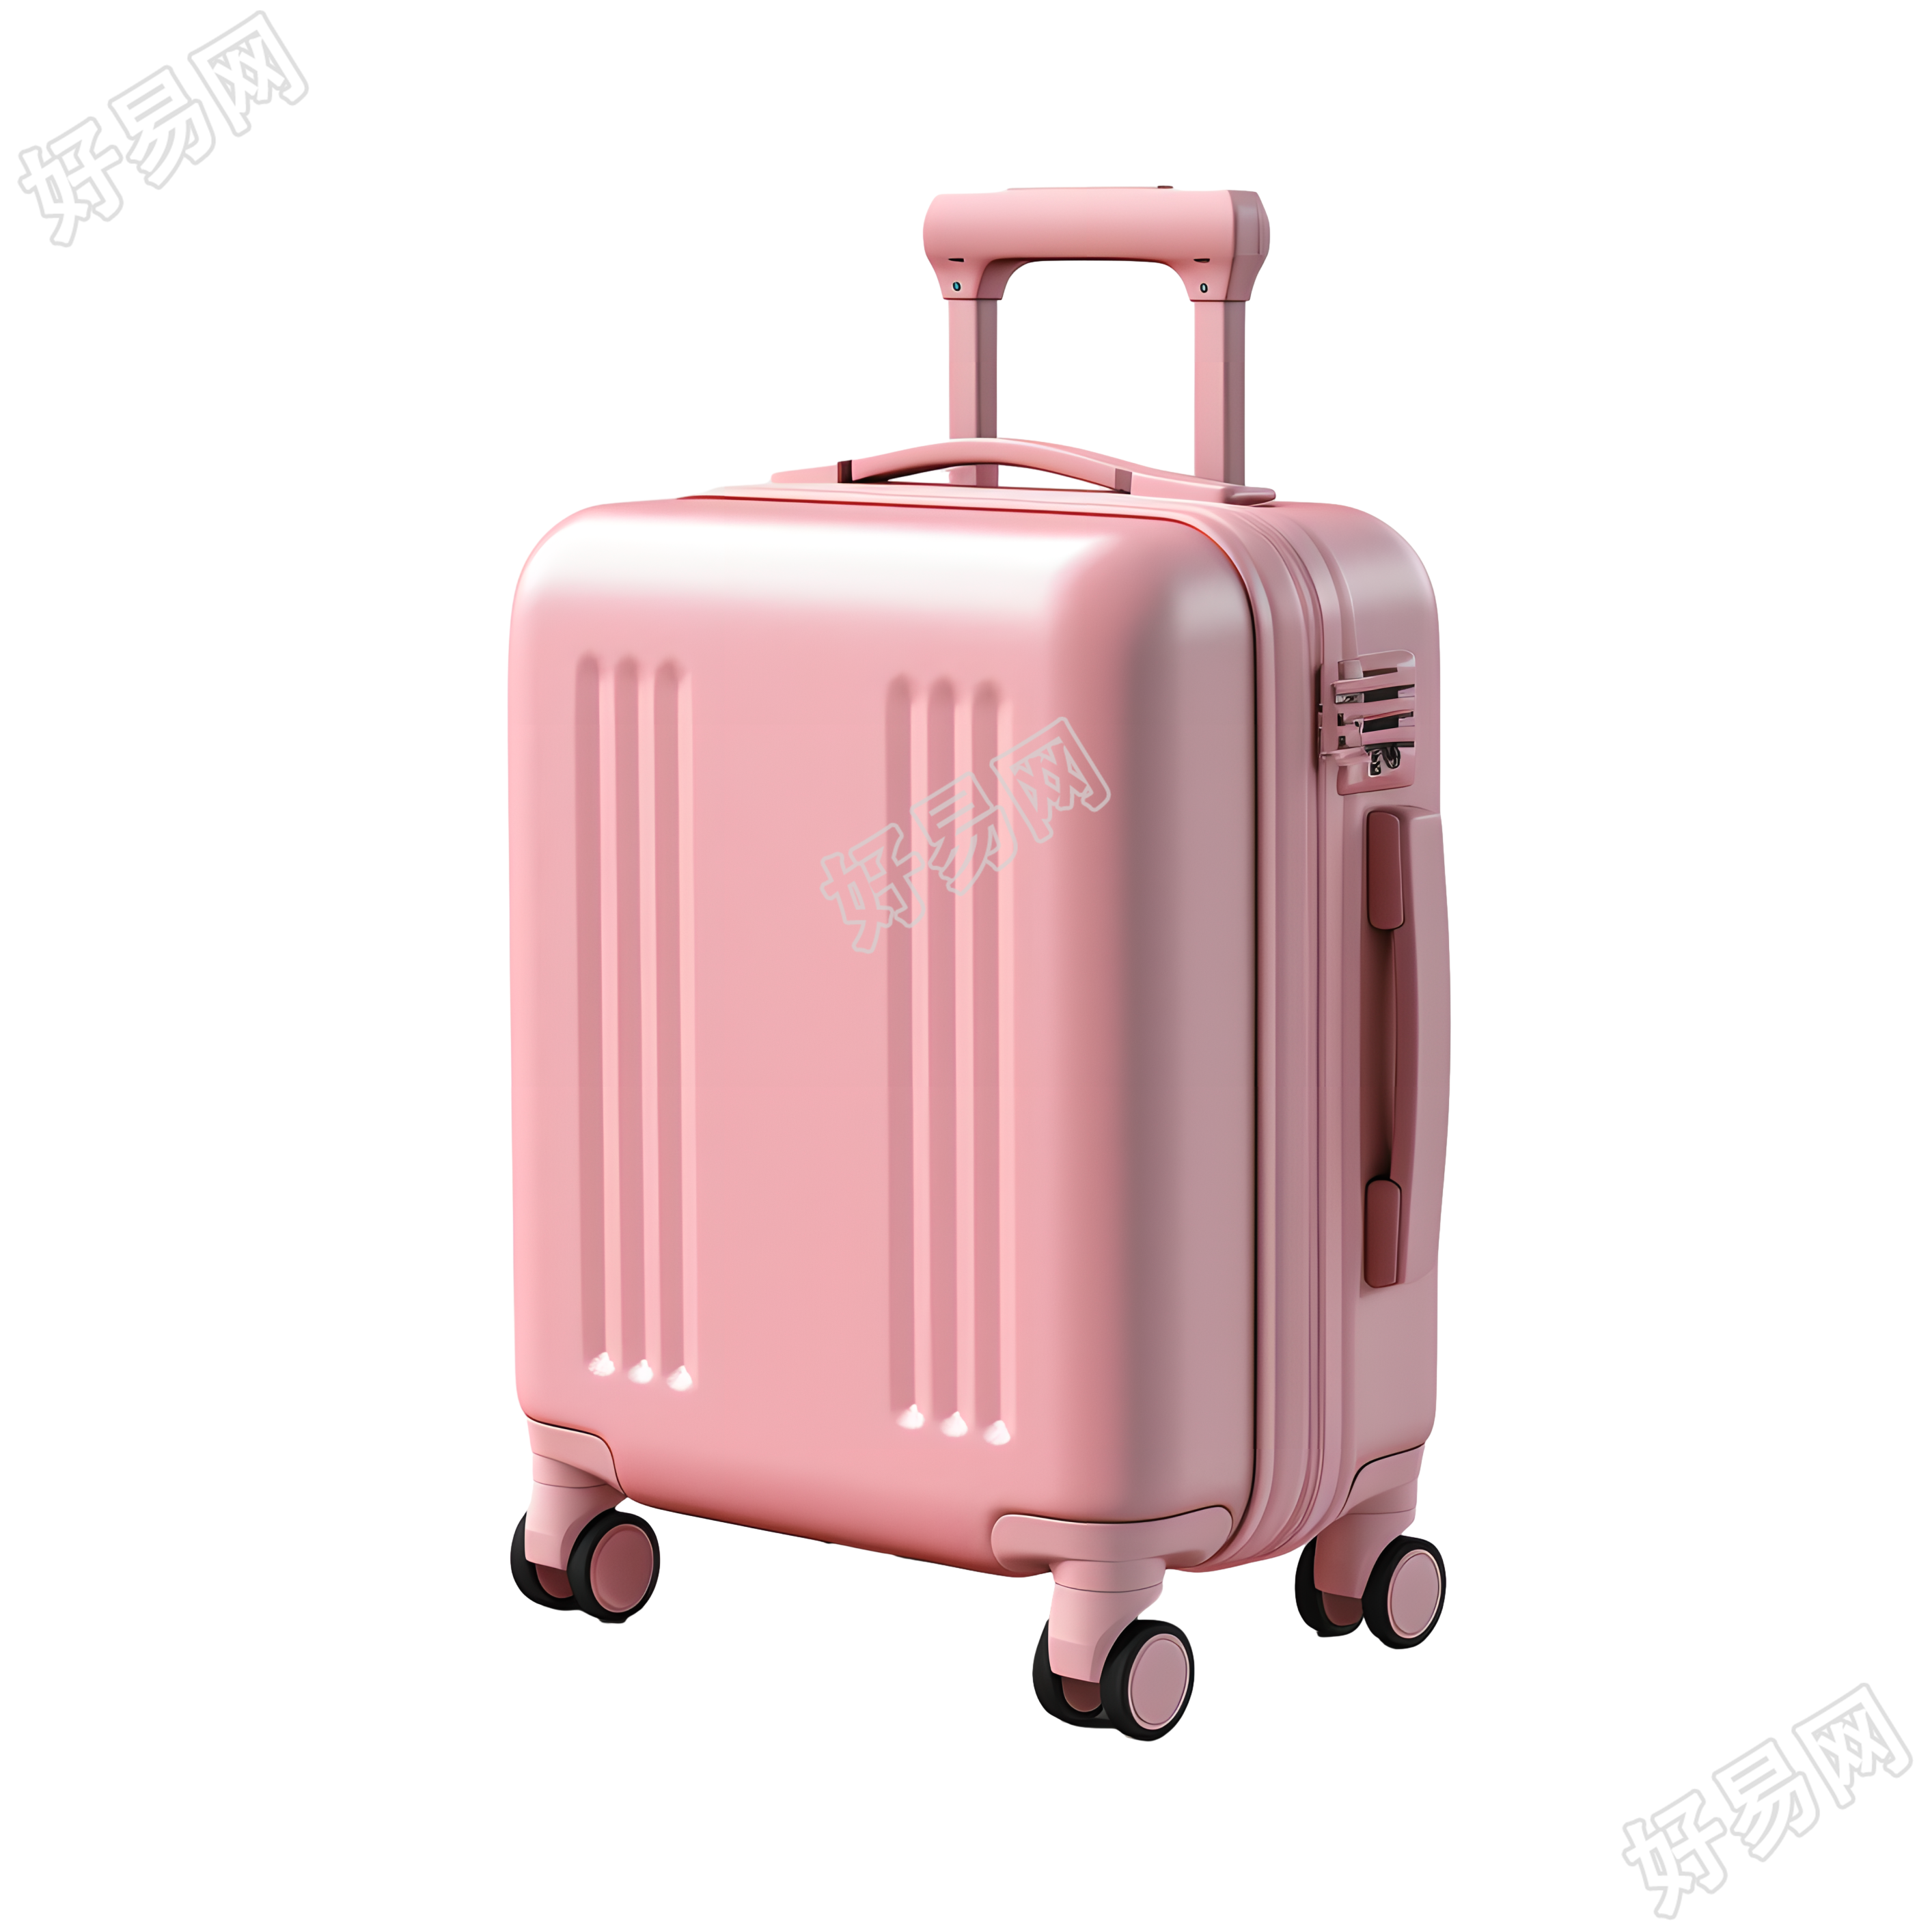 旅行行李箱创意设计素材